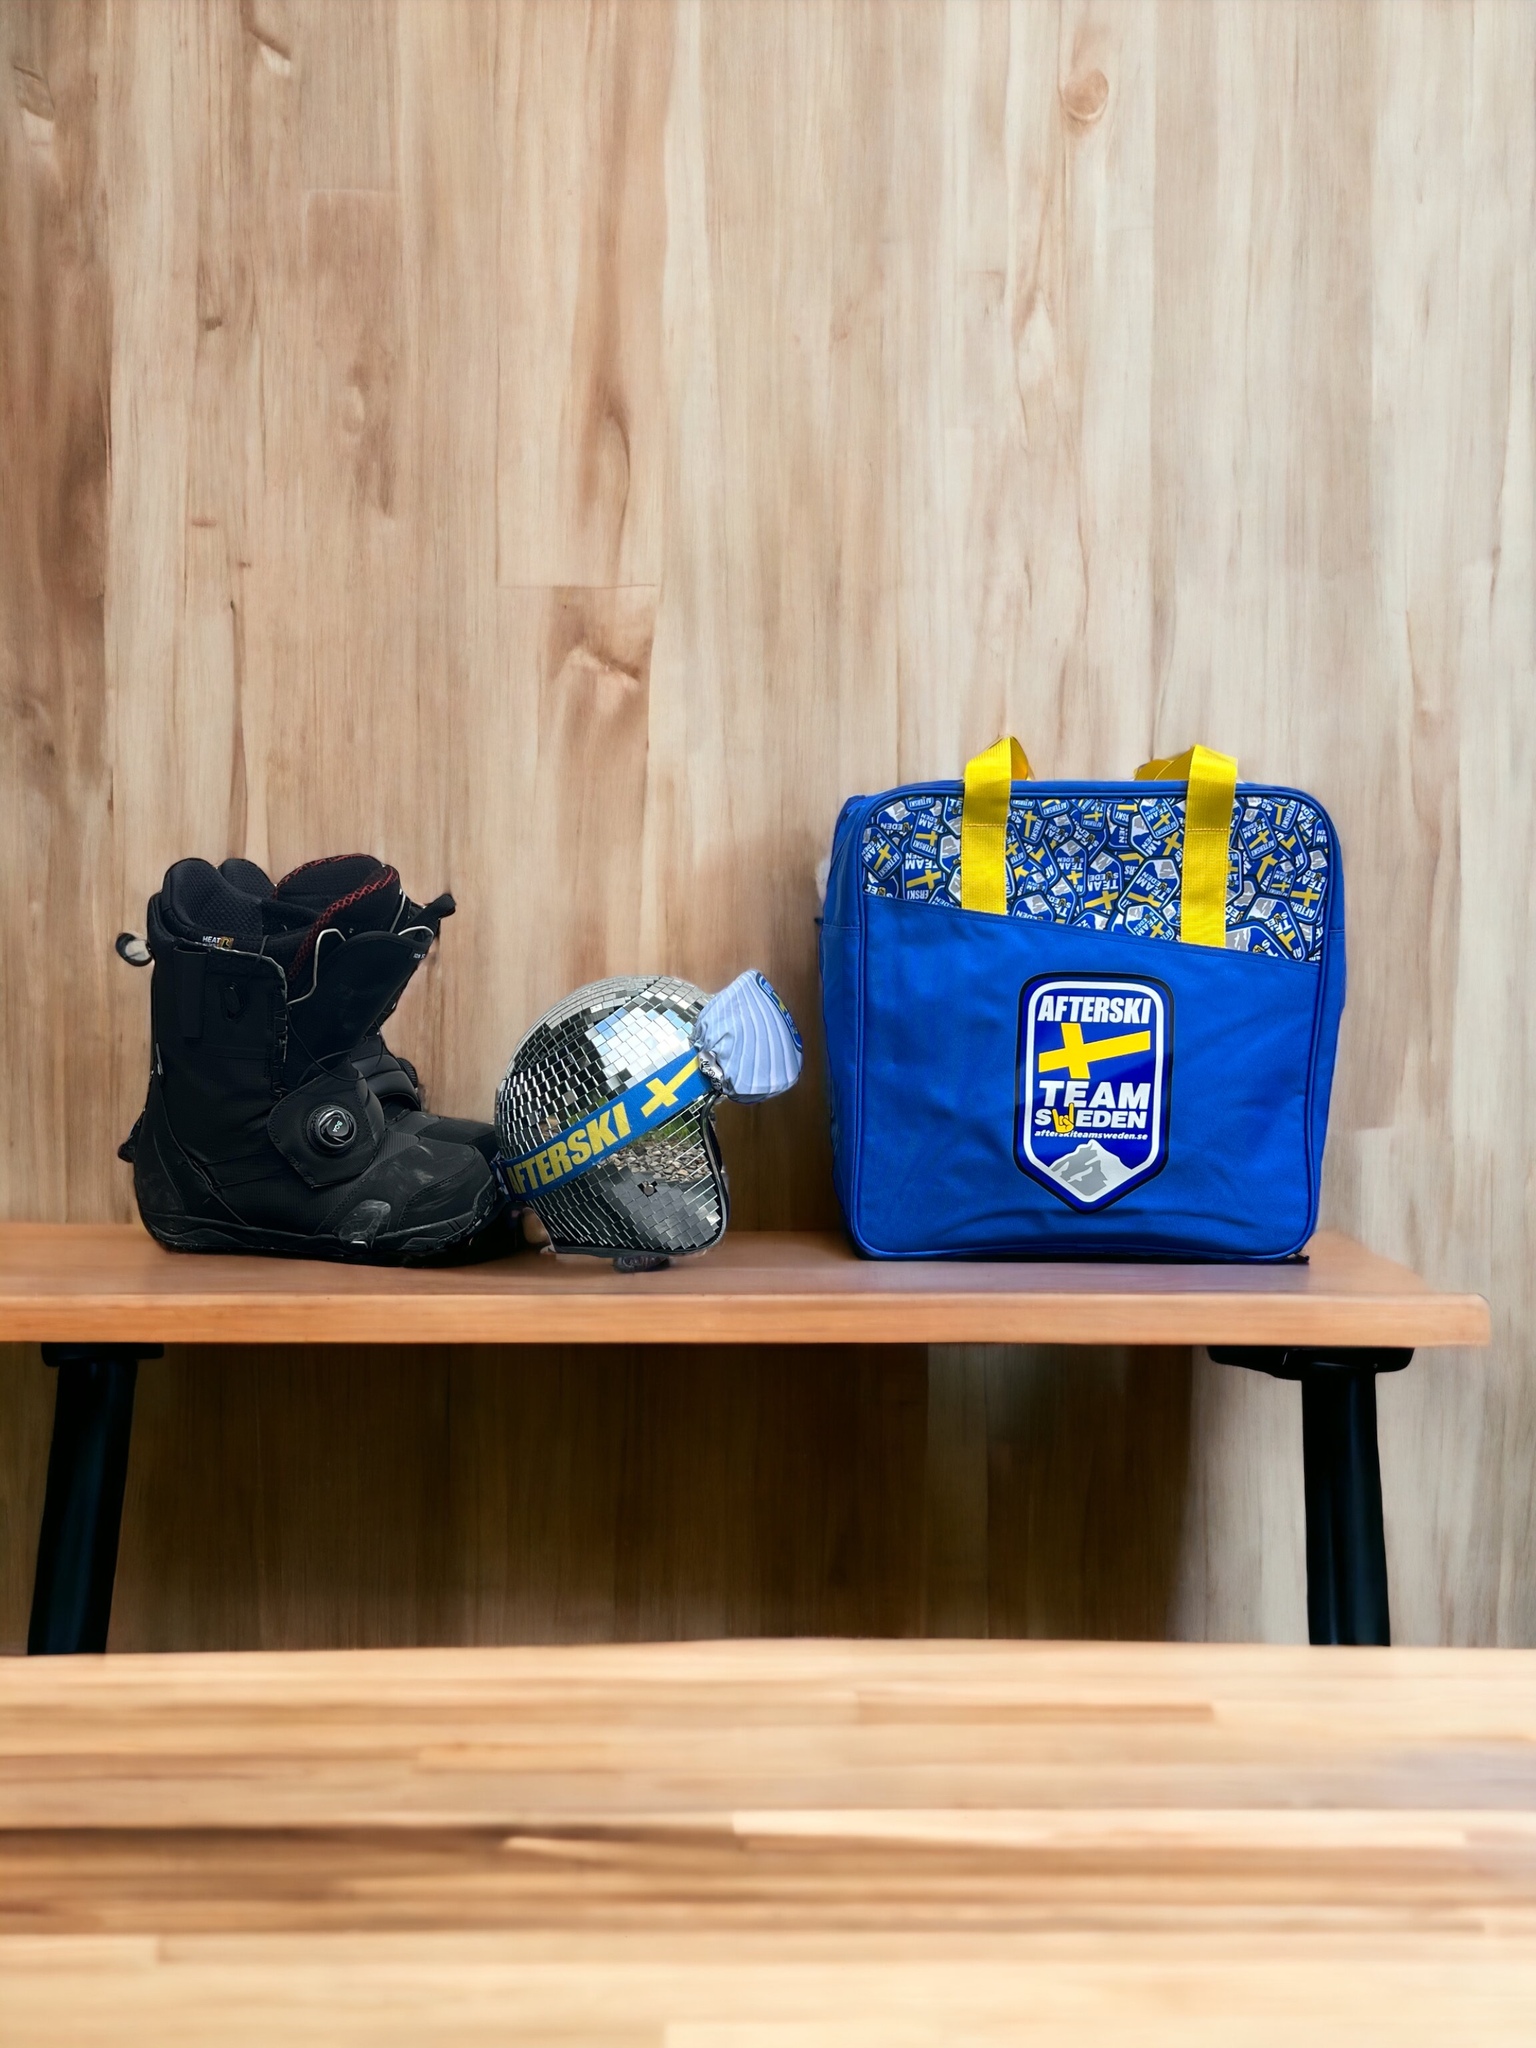 Pjäxbag / Handbagage ”Lätt packad”